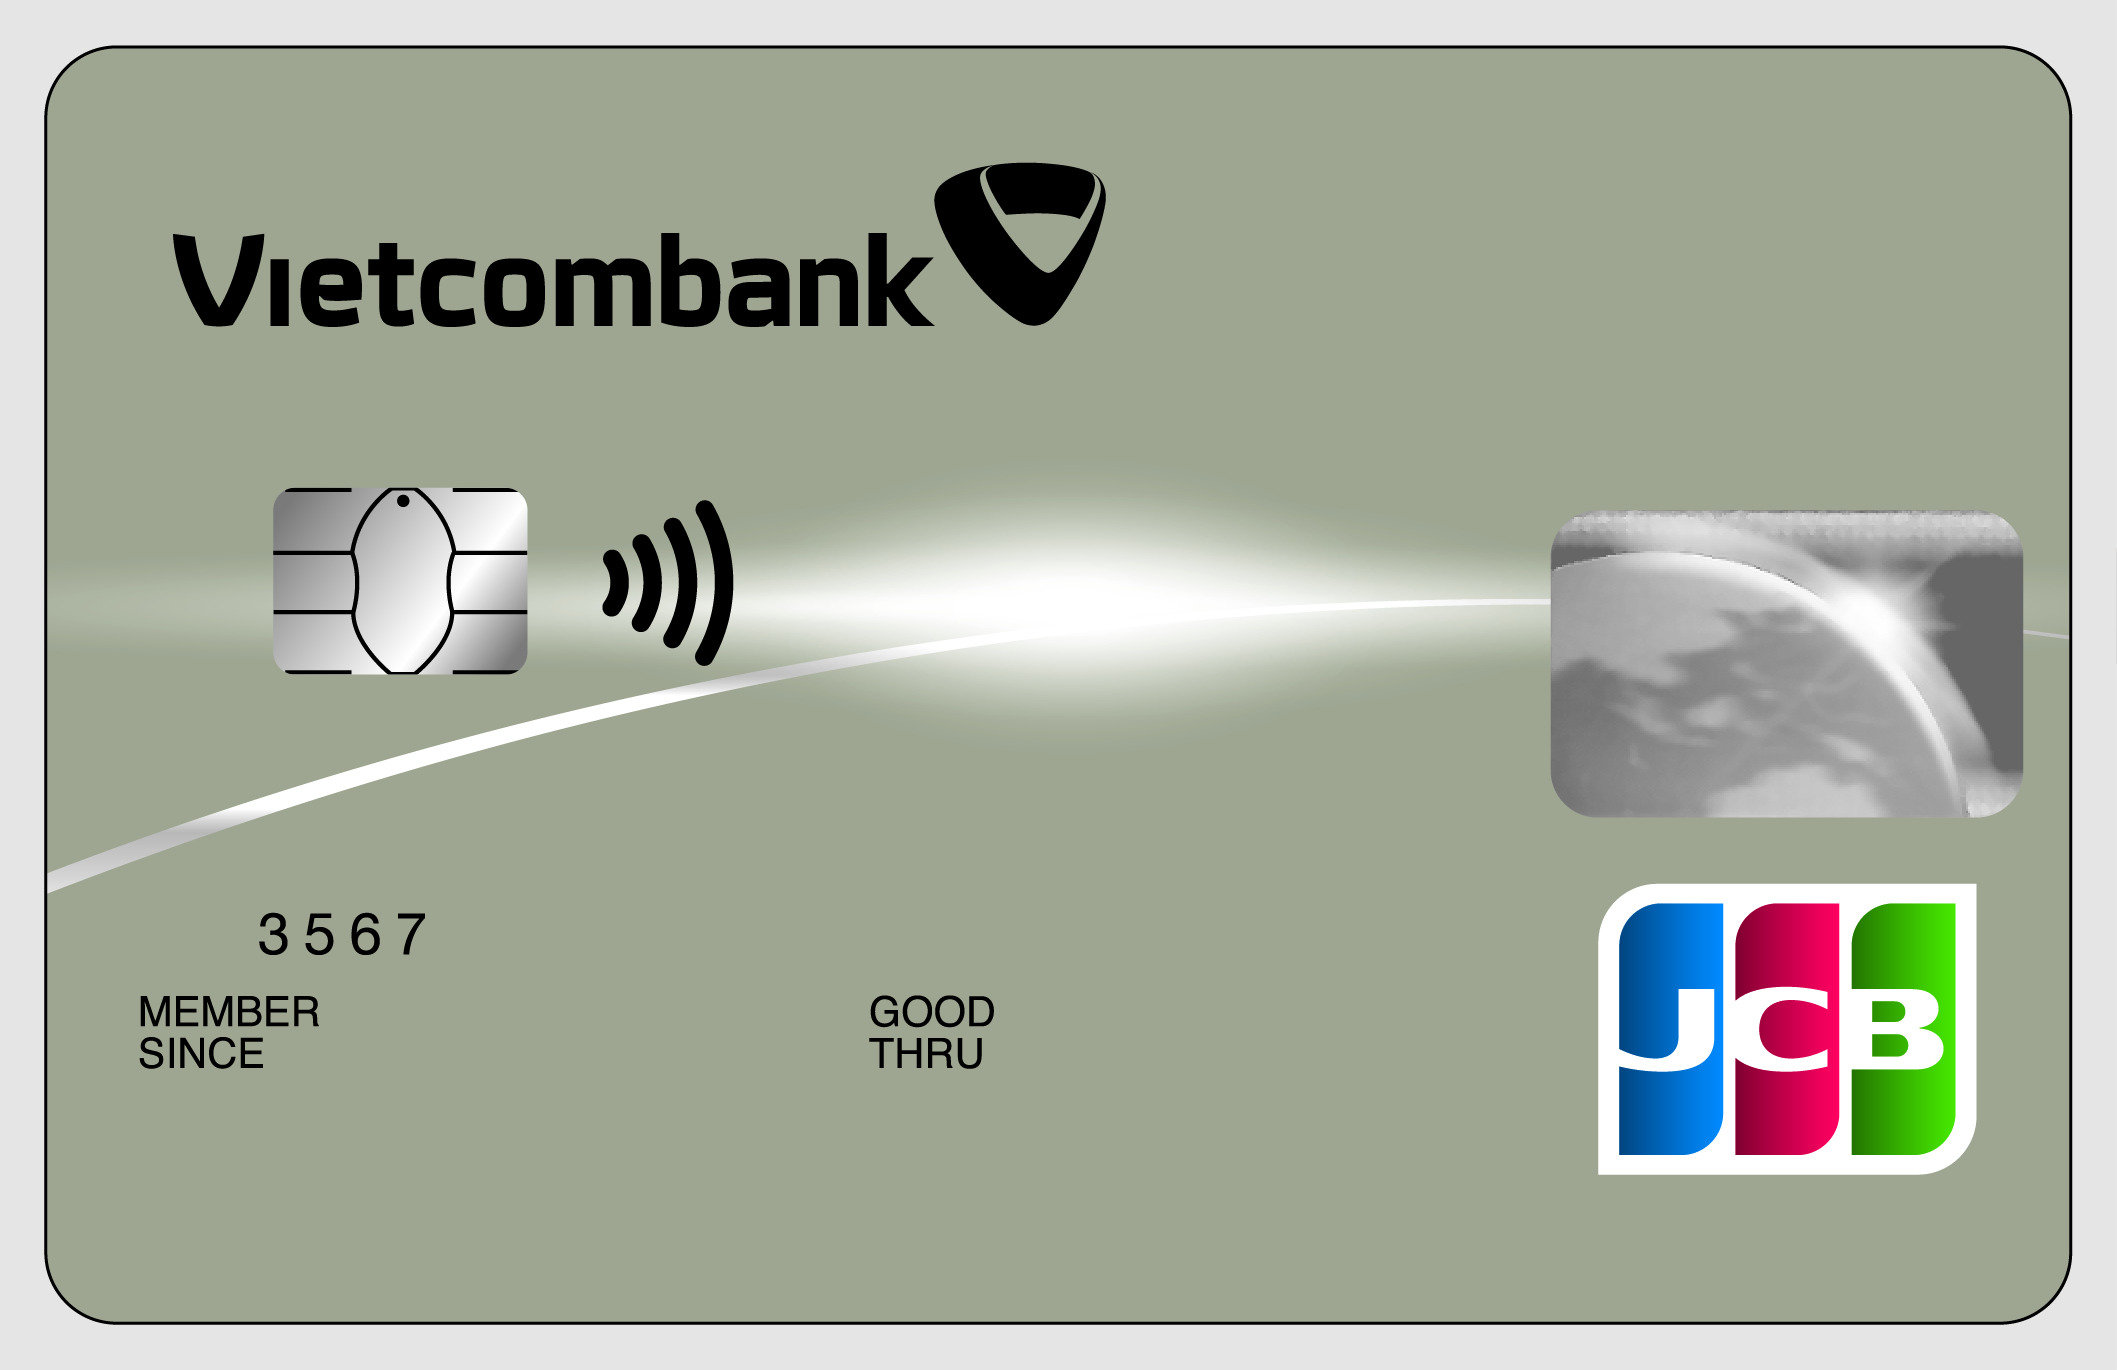 Vietcombank JCB – Hạng Chuẩn 